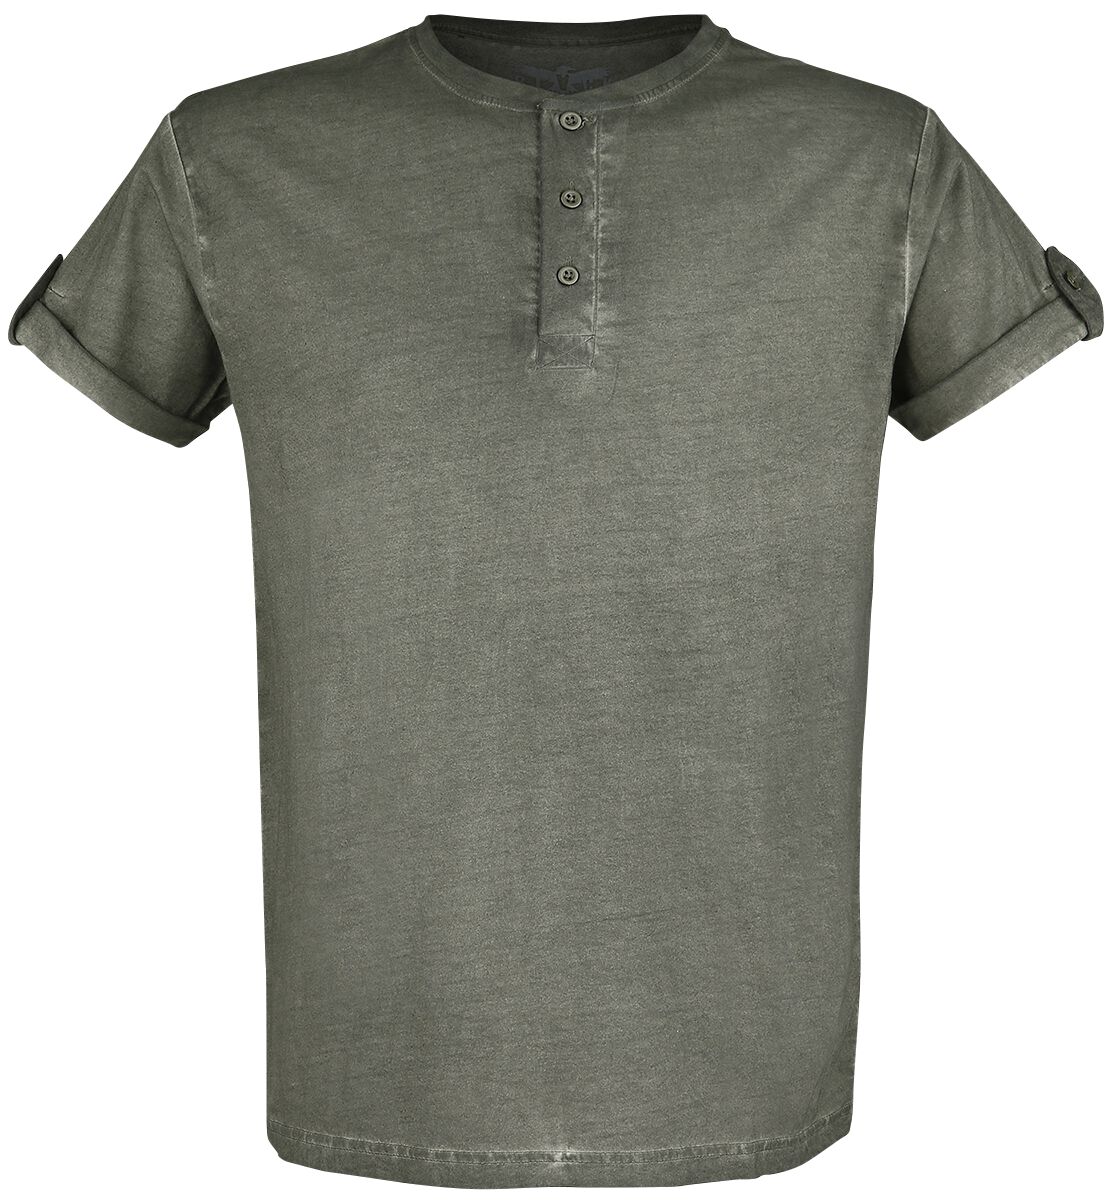 Black Premium by EMP grünes T-Shirt mit Knopfleiste und umgeschlagenen Ärmeln T-Shirt grün in M